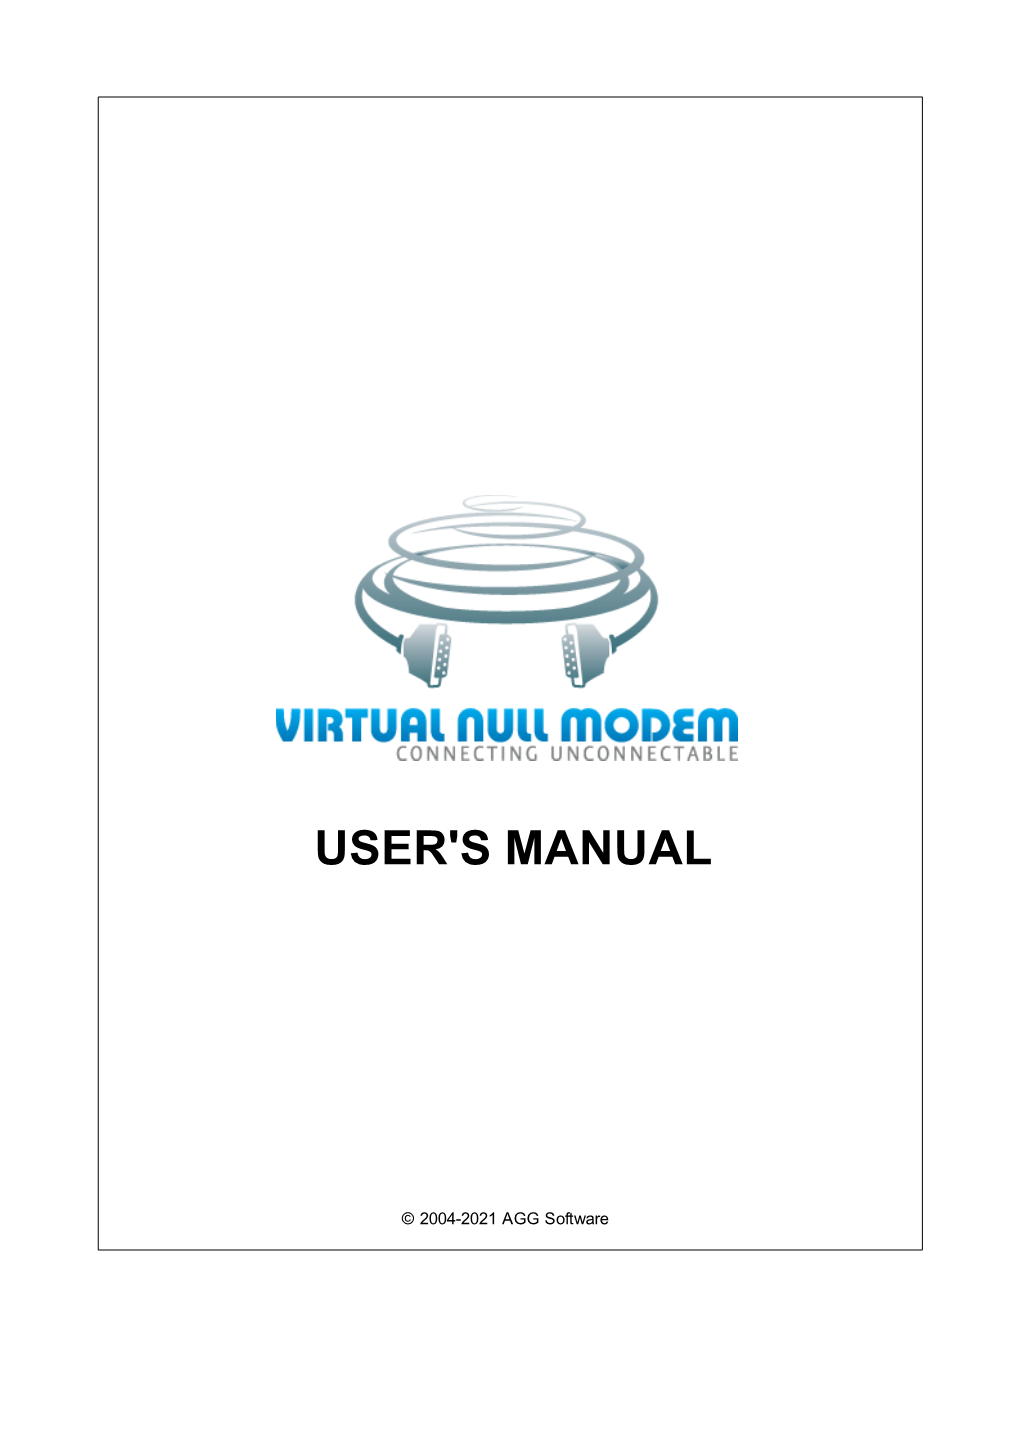 5 Virtual Null Modem 8 1 Intro..D..U..C..T.I.O..N